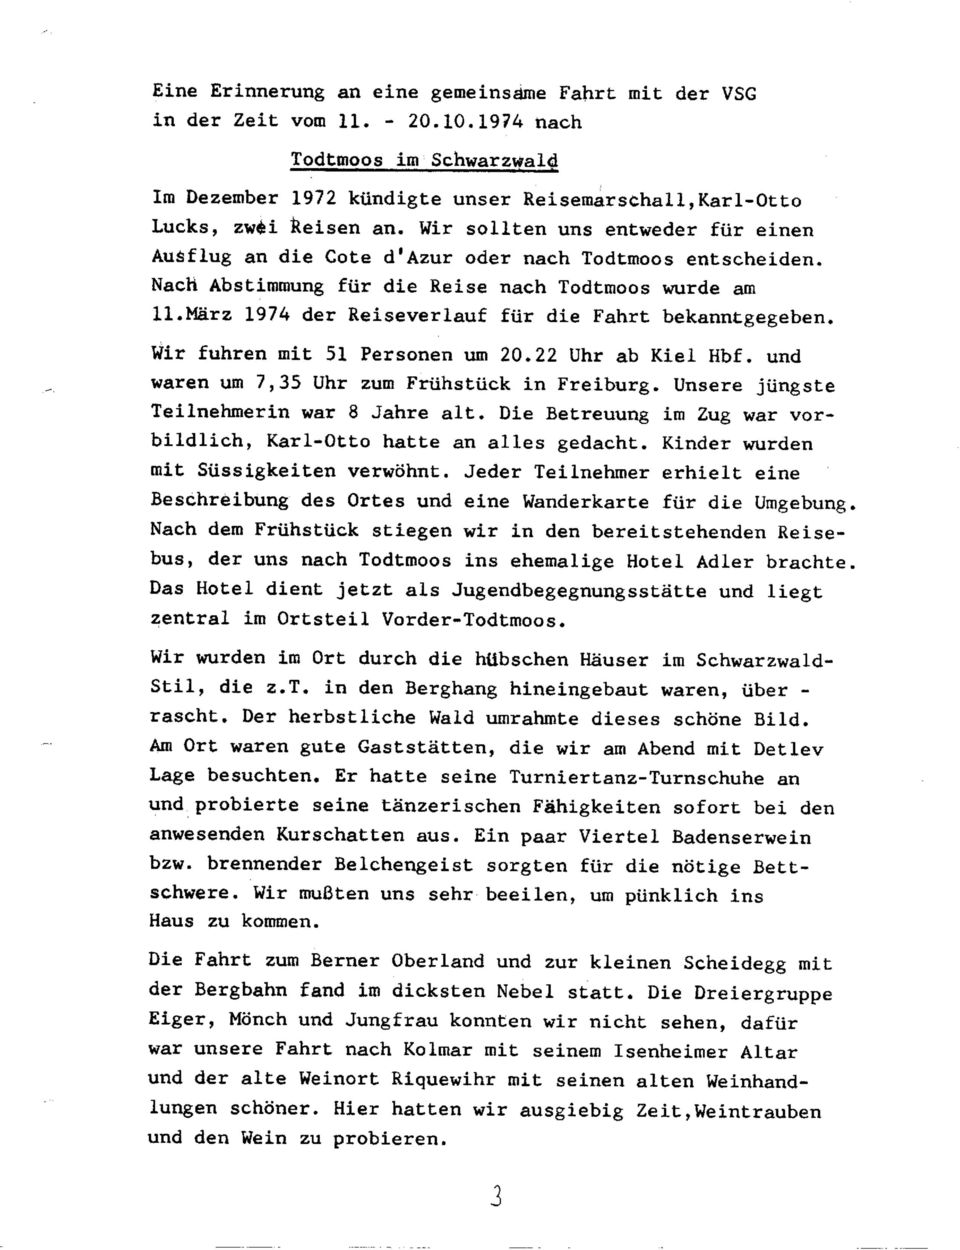 Marz 1974 der Reiseverlauf für die Fahrt bekanntgegeben. Wir fuhren mit 51 Personen um 20.22 Uhr ab Kiel Hbf. und waren um 7,35 Uhr zum Frühstück in Freiburg.